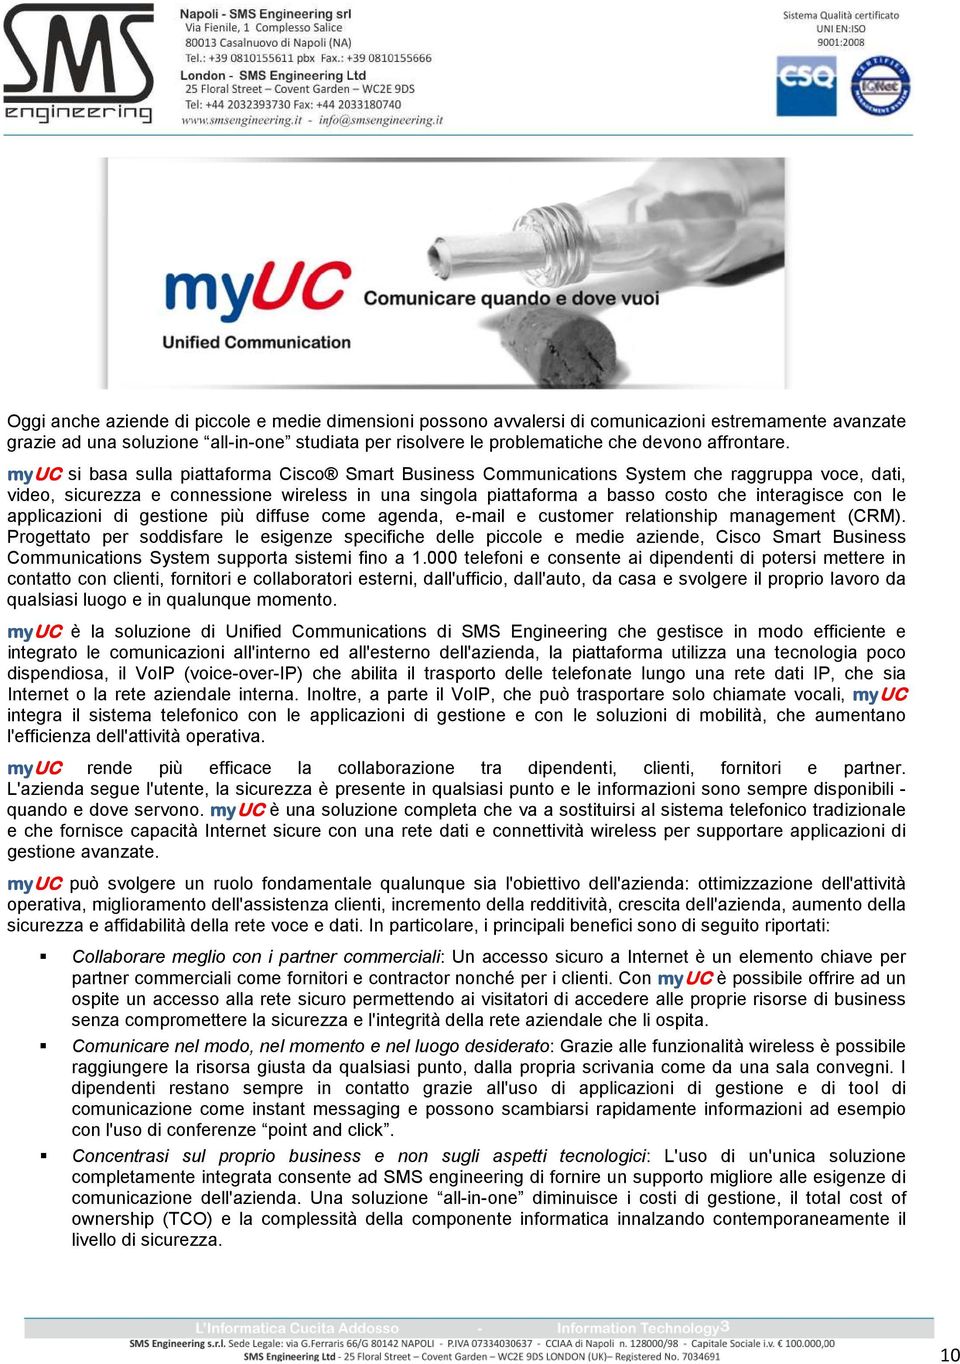 myuc si basa sulla piattaforma Cisco Smart Business Communications System che raggruppa voce, dati, video, sicurezza e connessione wireless in una singola piattaforma a basso costo che interagisce